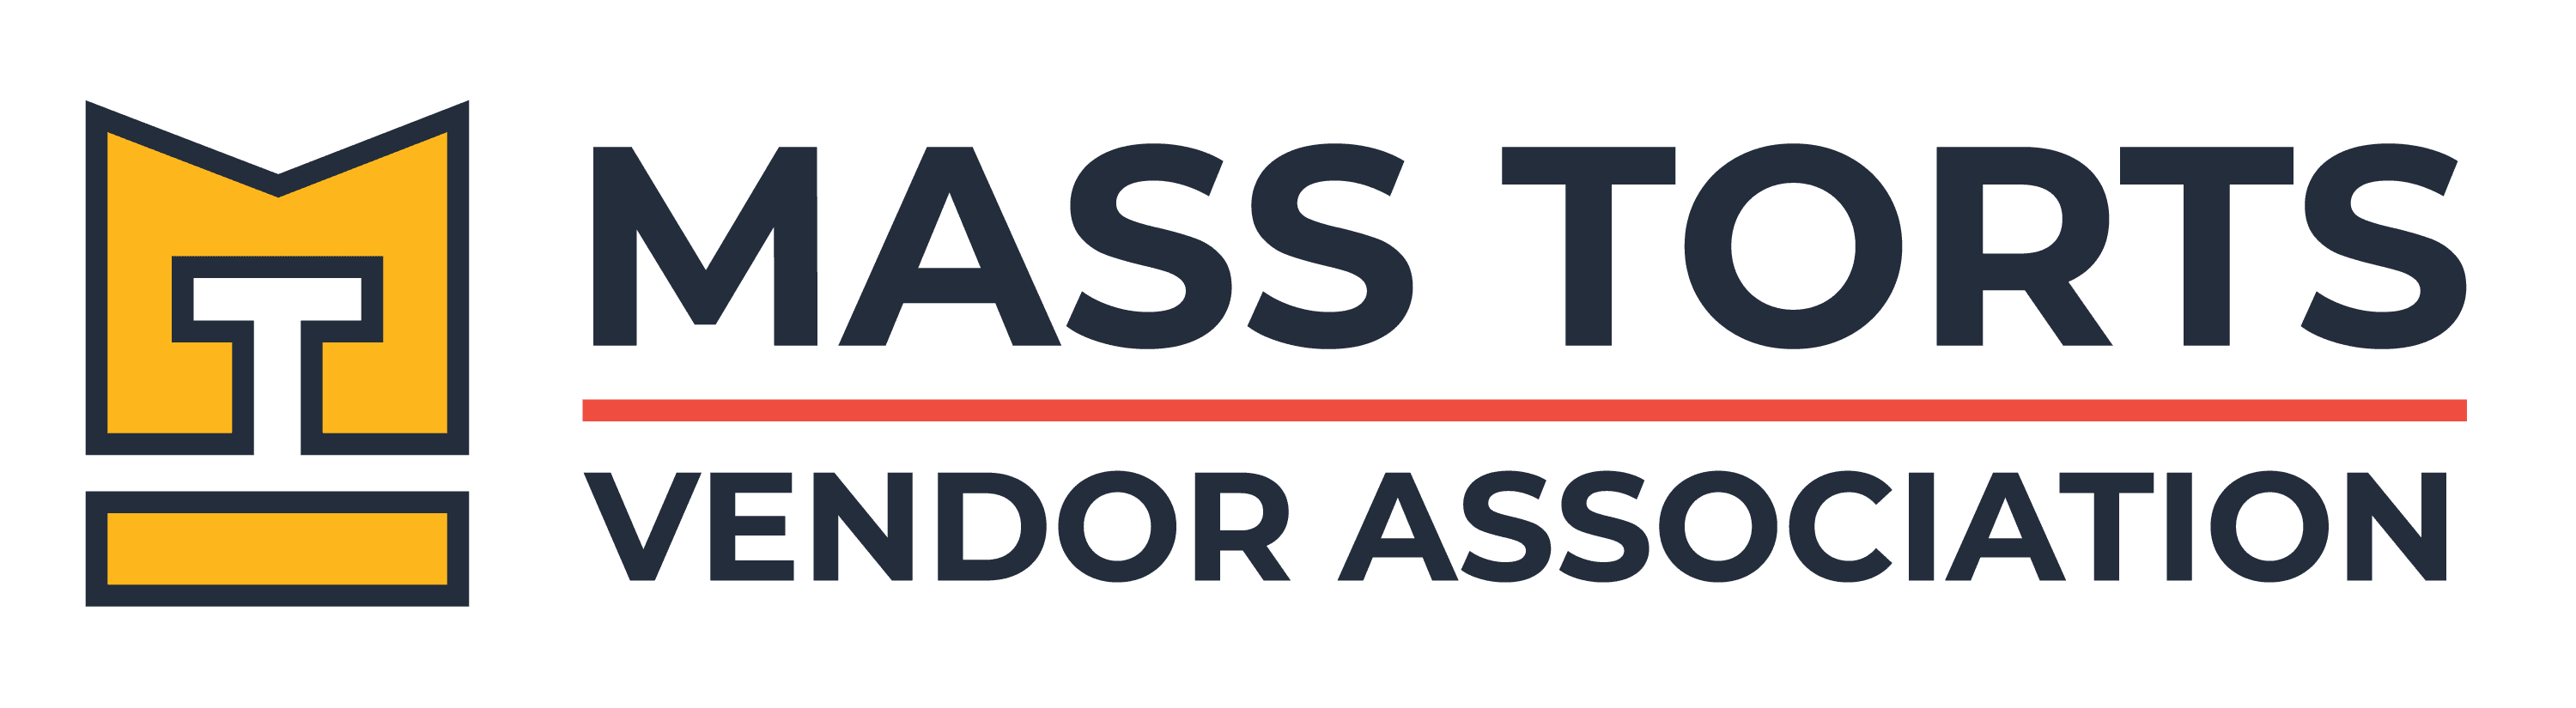 Mass Torts Vendor Association